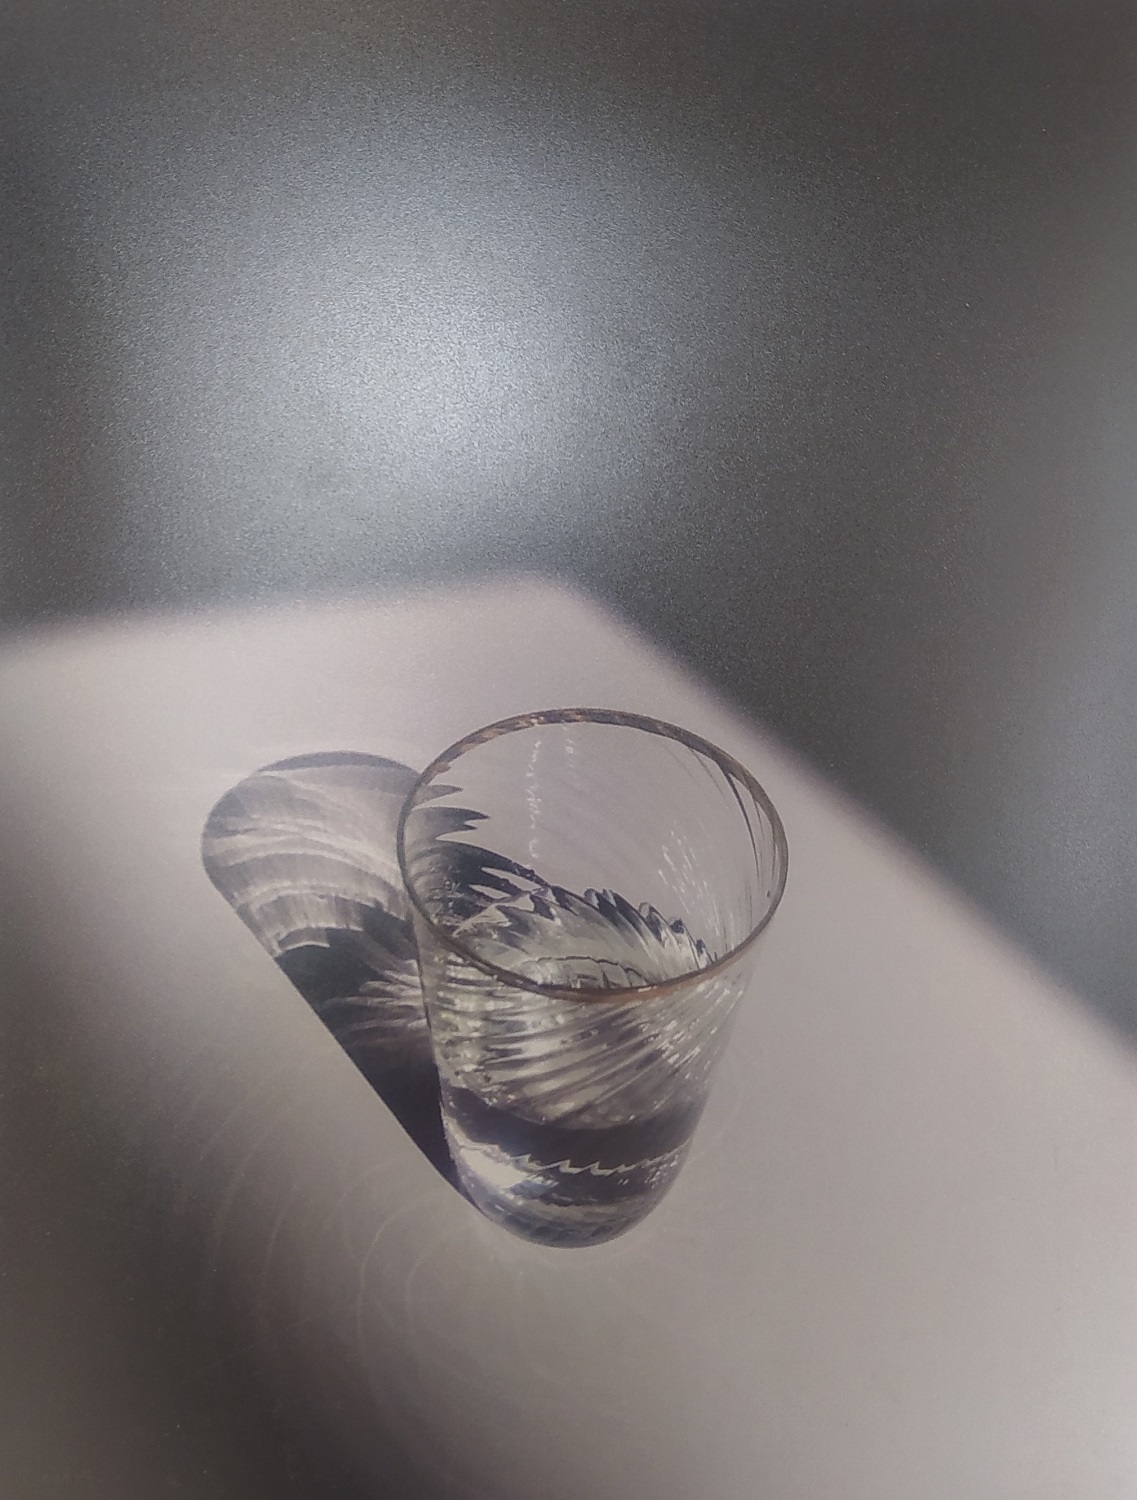 Czarno-białe zdjęcie przedstawiające szklany kieliszek do połowy napełniony przezroczystym płynem.